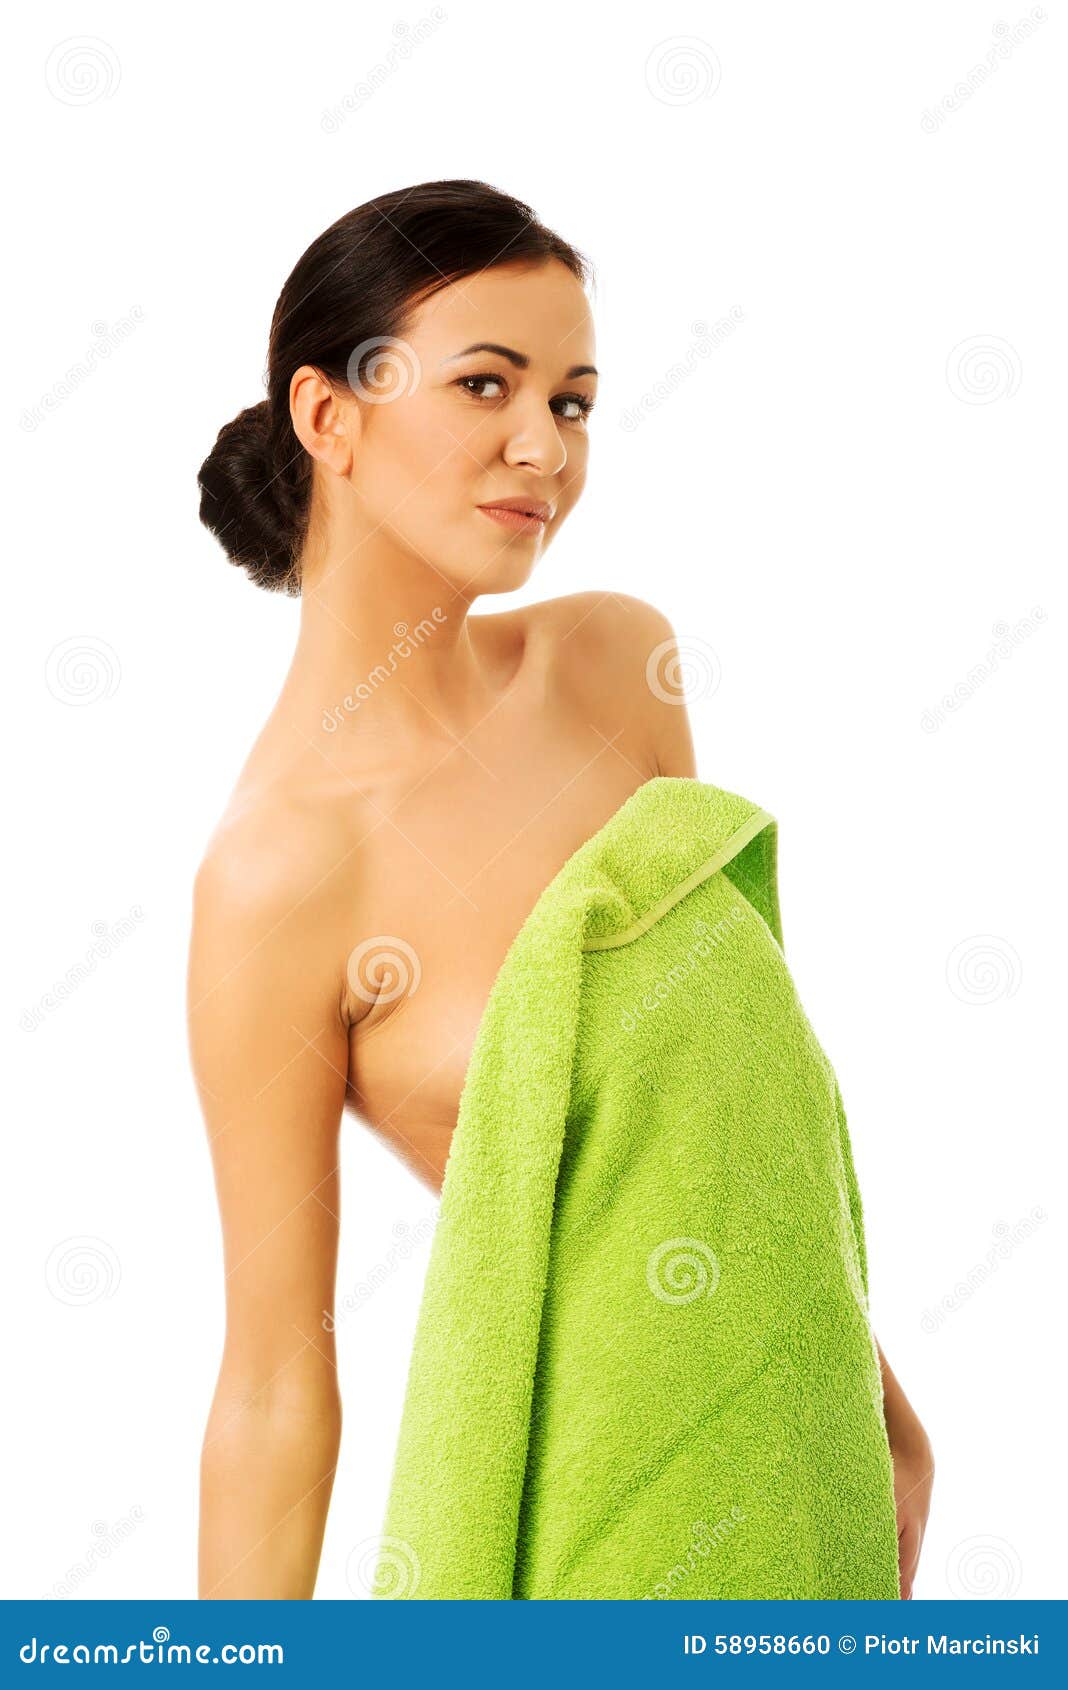 Обернутая полотенцем. Девушка обернутая в полотенце. Девушка в одном полотенце. Женщины завёрнутые в полотенце. Девушка завернутая в полотенце.